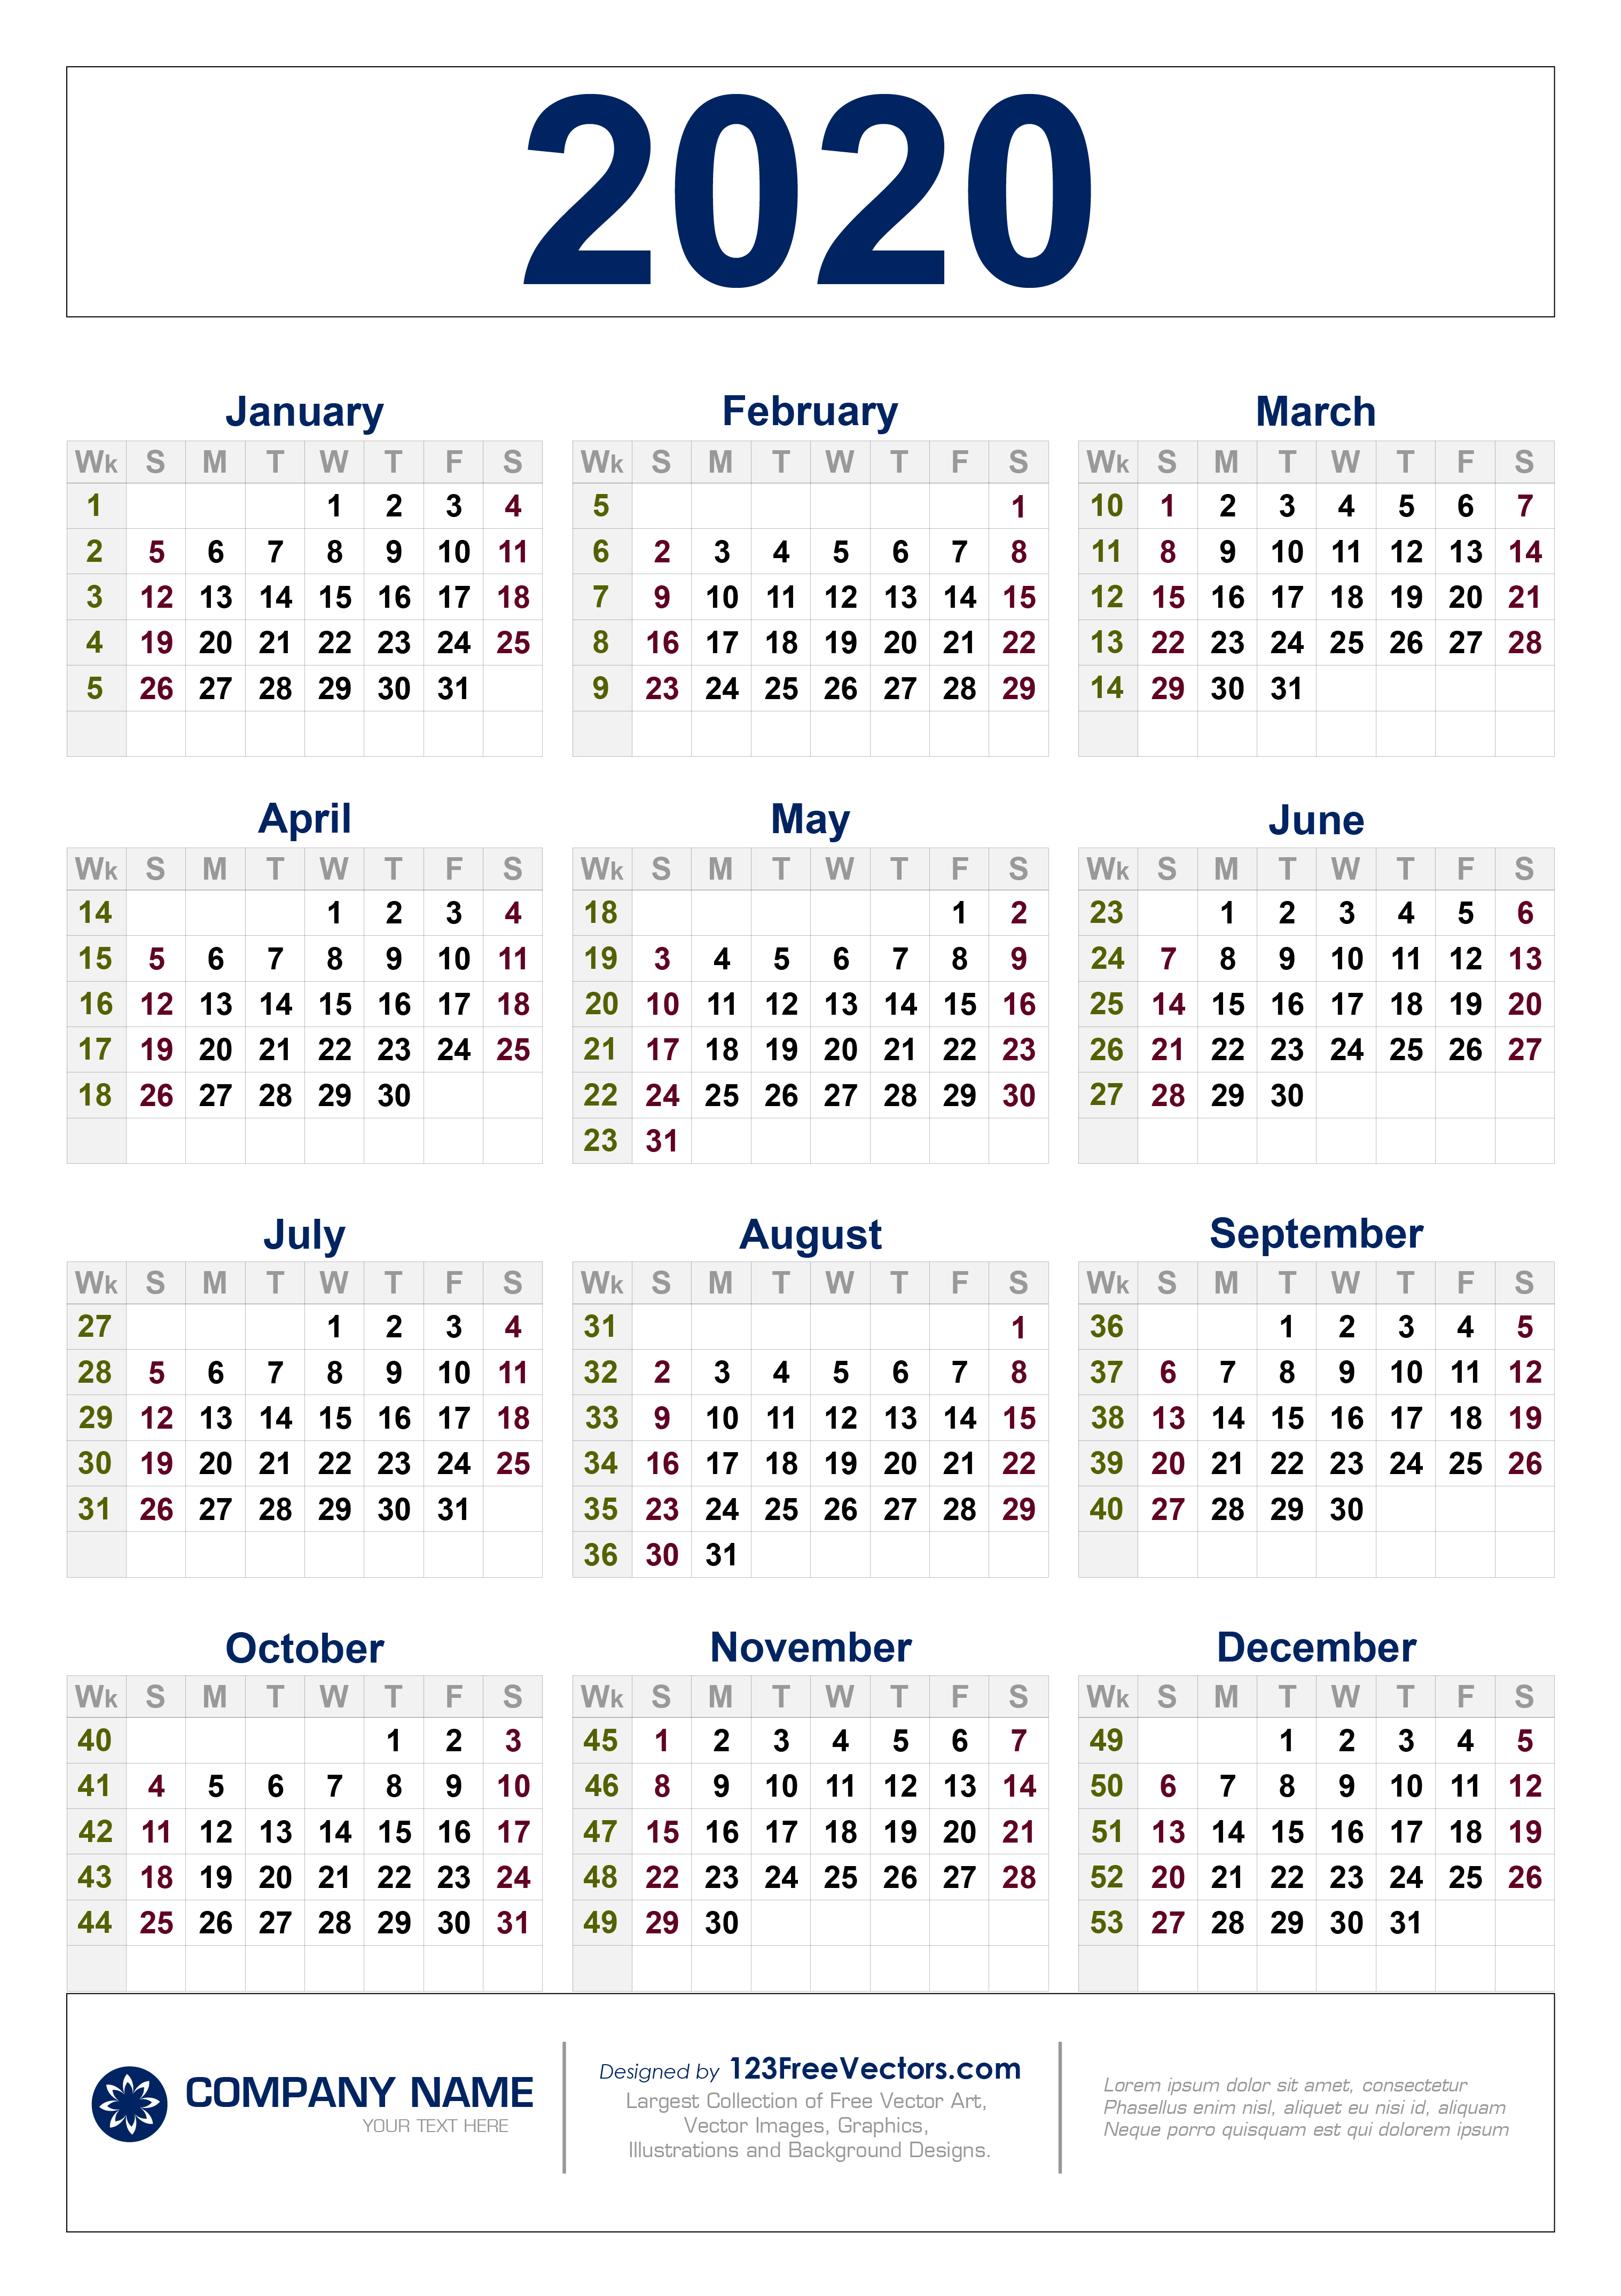 Free Download 2020 Calendar With Week Numbers in 2020 Calendar Vector Free